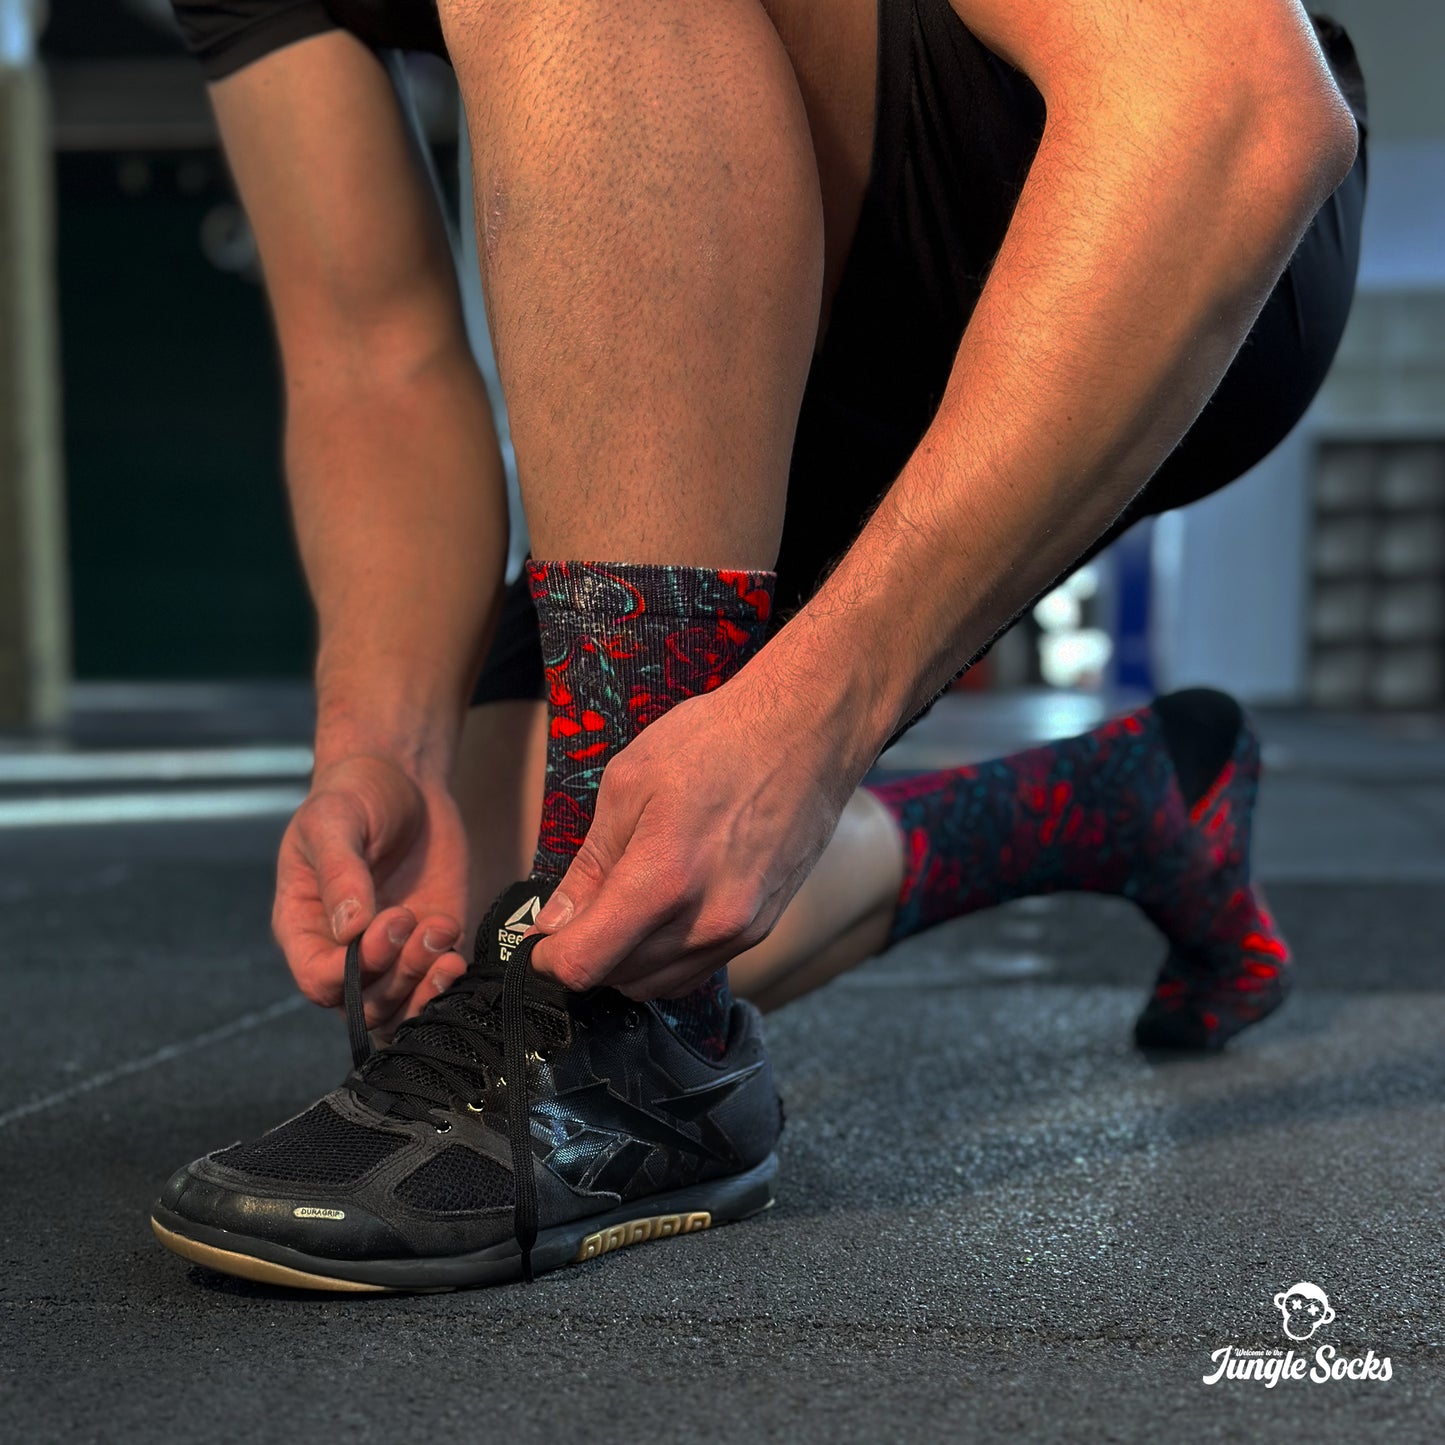 Deportista profesional de crossfit atándose los cordones de las zapatillas con calcetines de Crossfit JungleSocks Tattoo